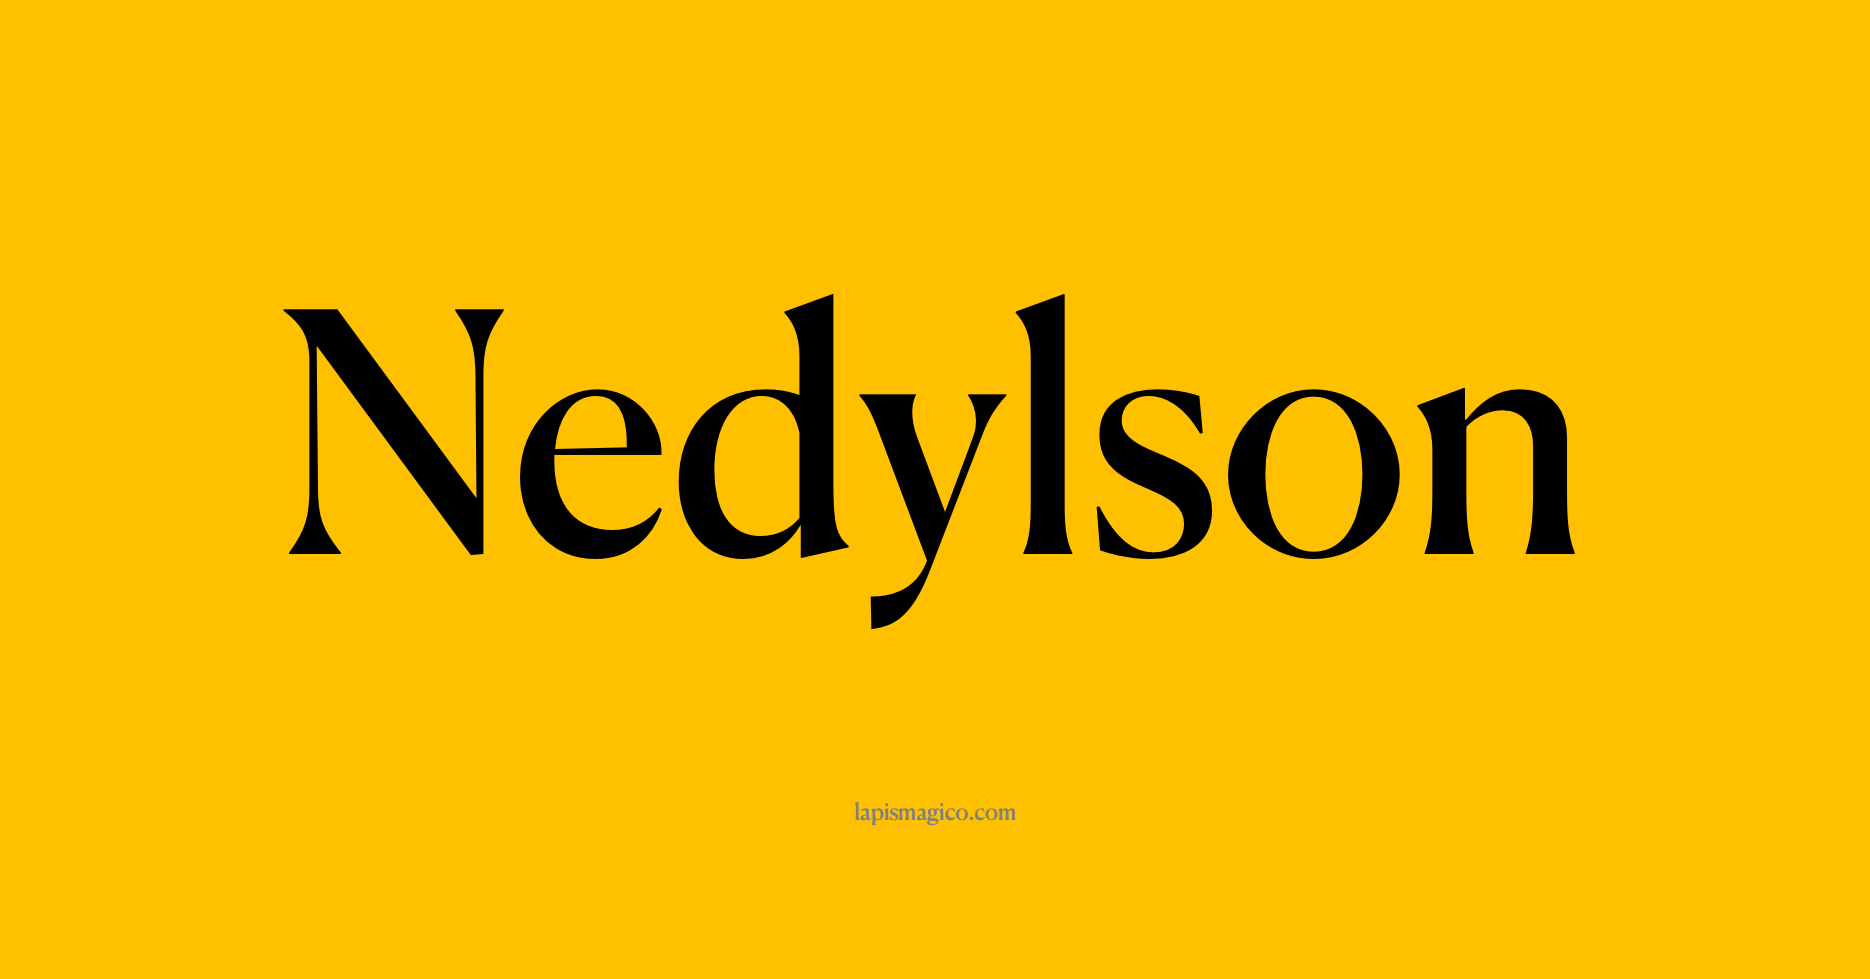 Nome Nedylson, ficha divertida com pontilhado para crianças